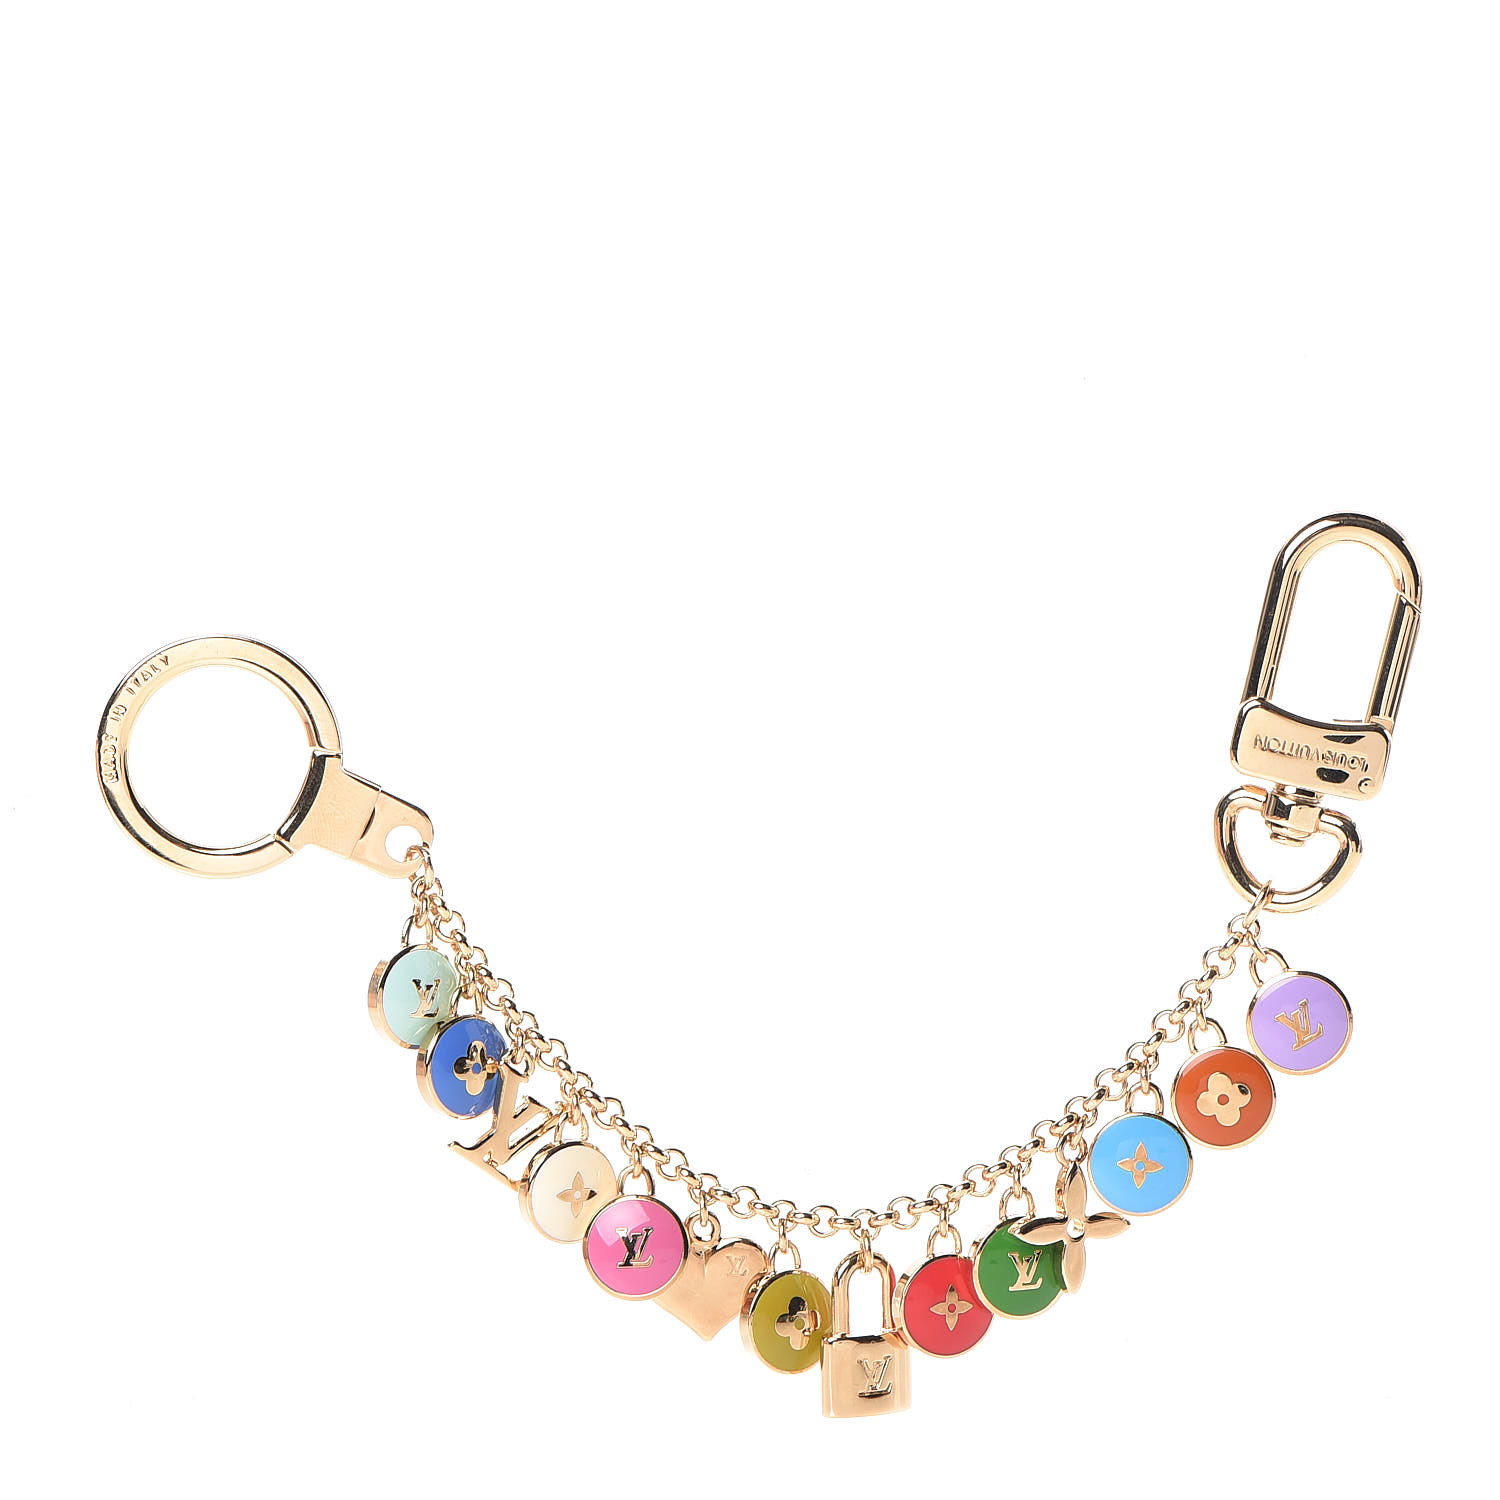 A Louis Vuitton Porte Cles Pastilles Multicolor Key Chain, 4 L